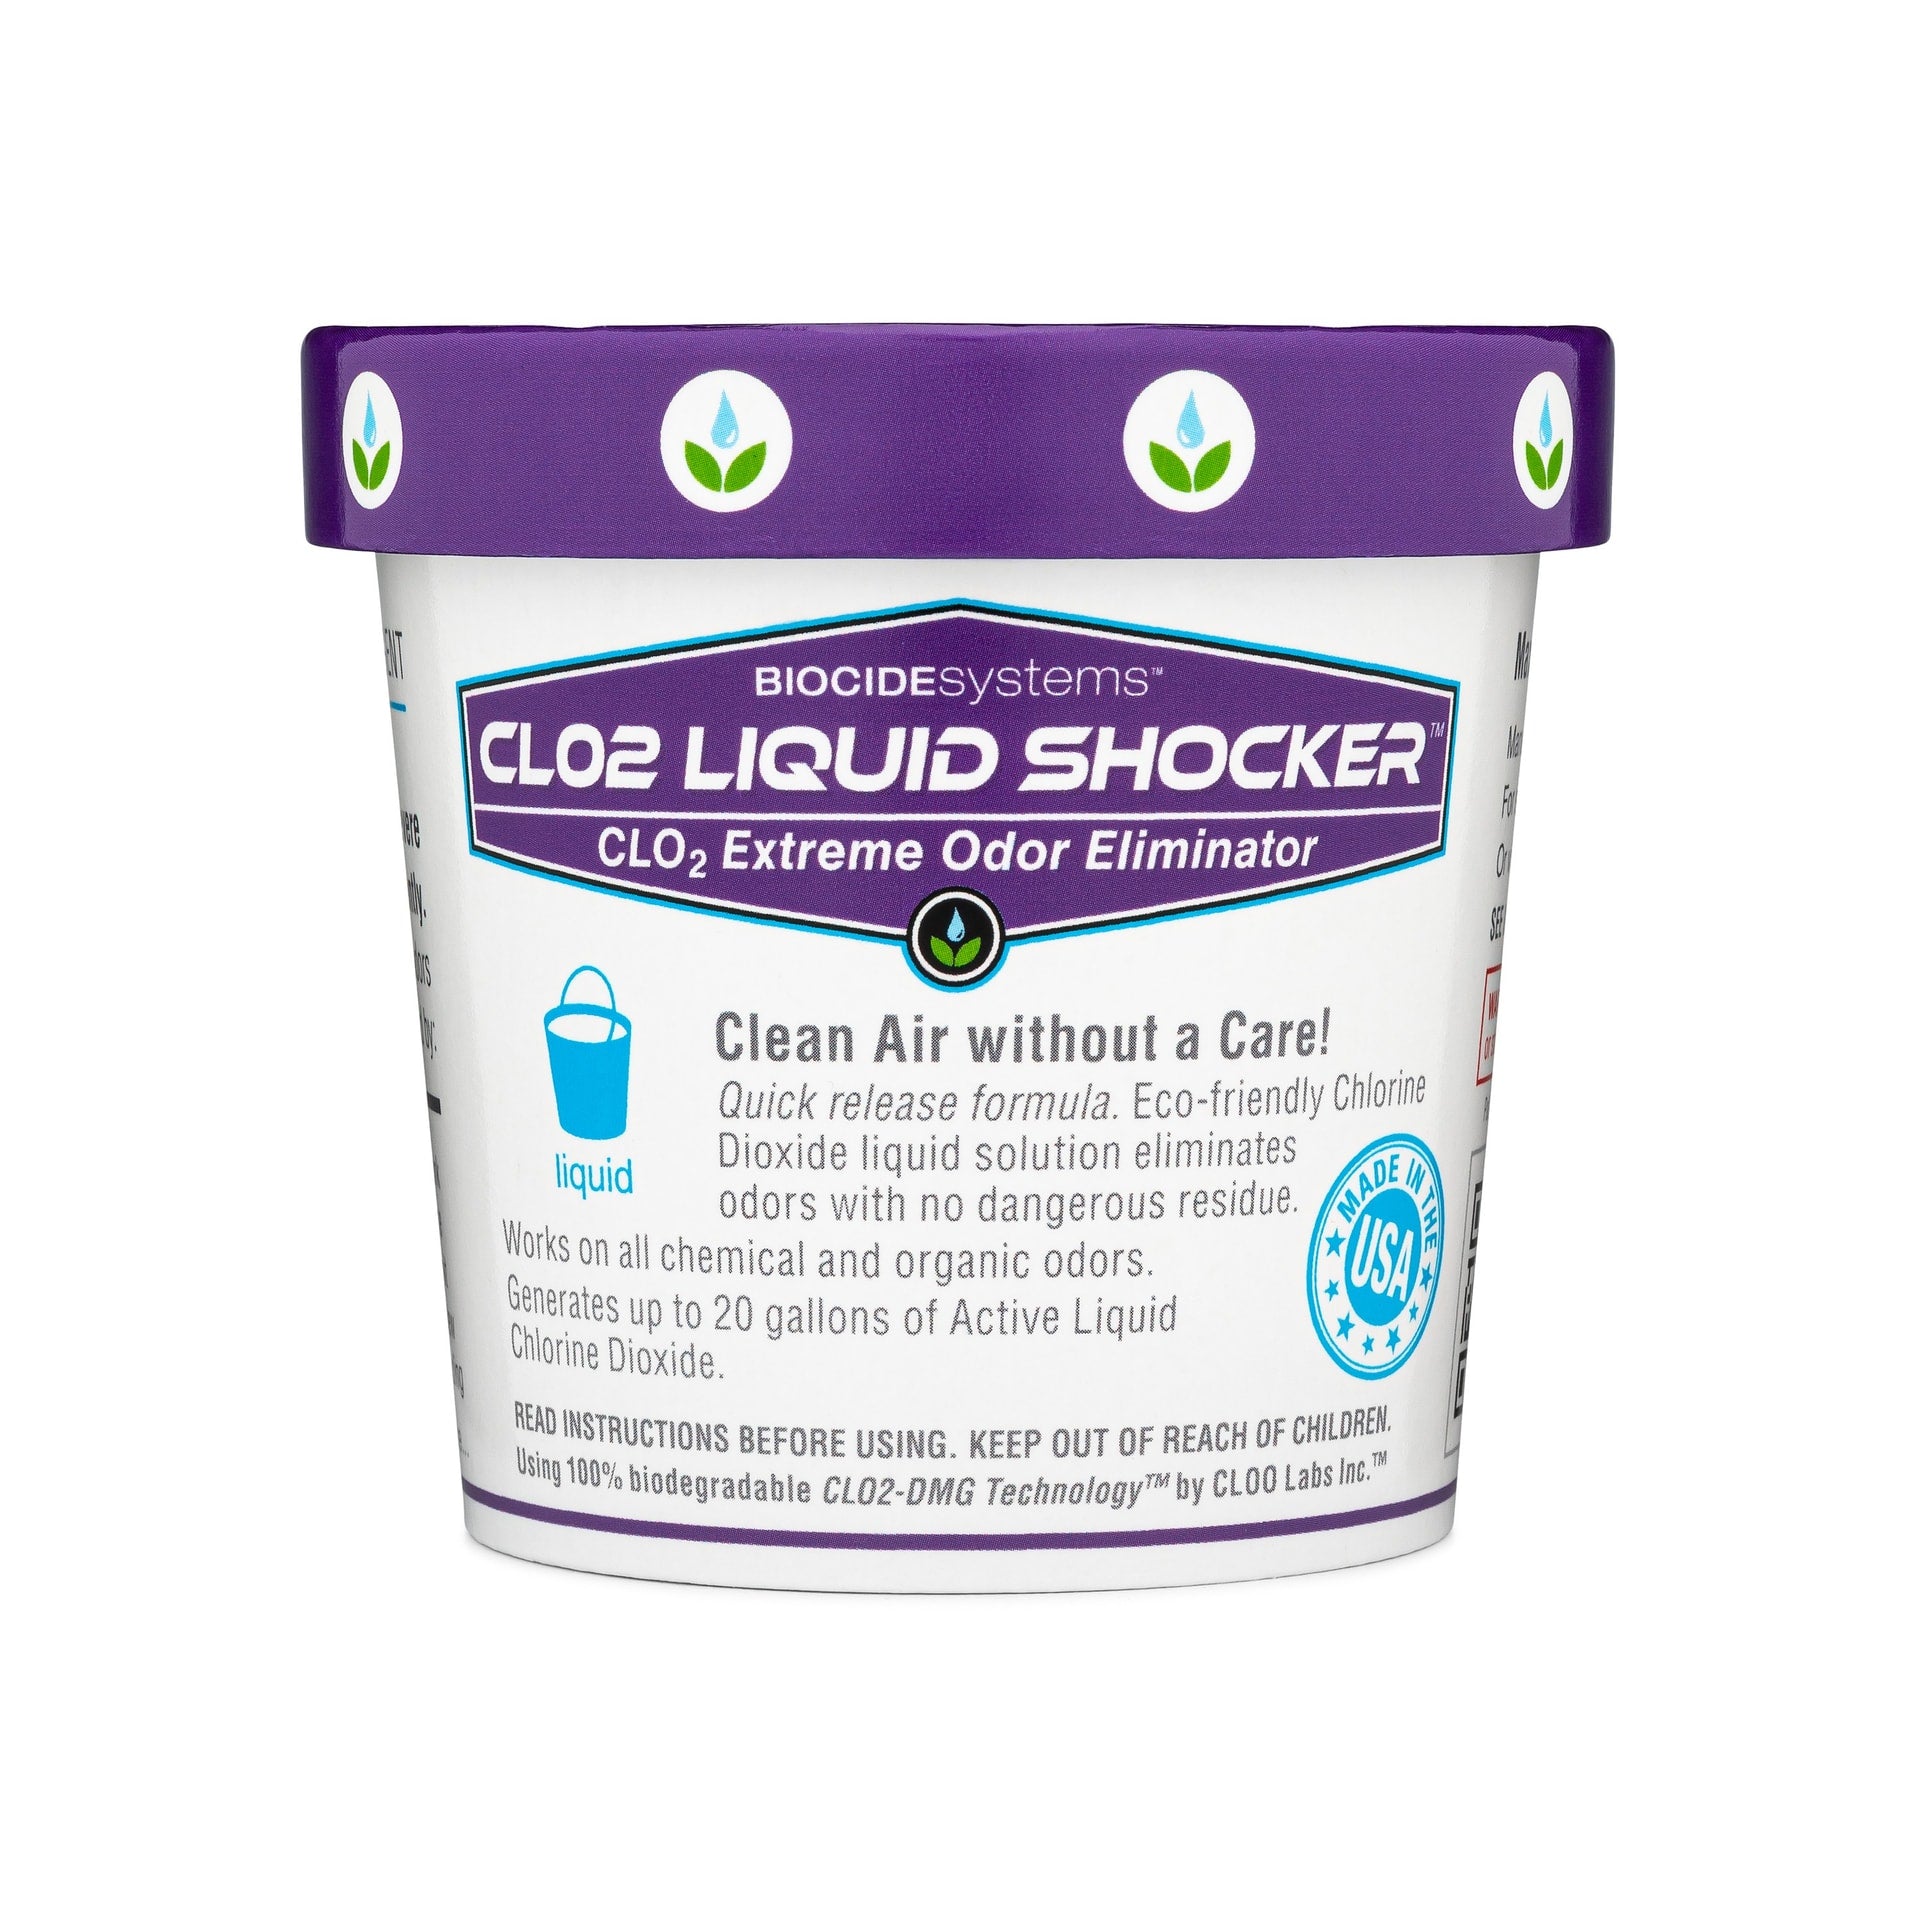 Biocide Systems clo2 Liquid Shocker